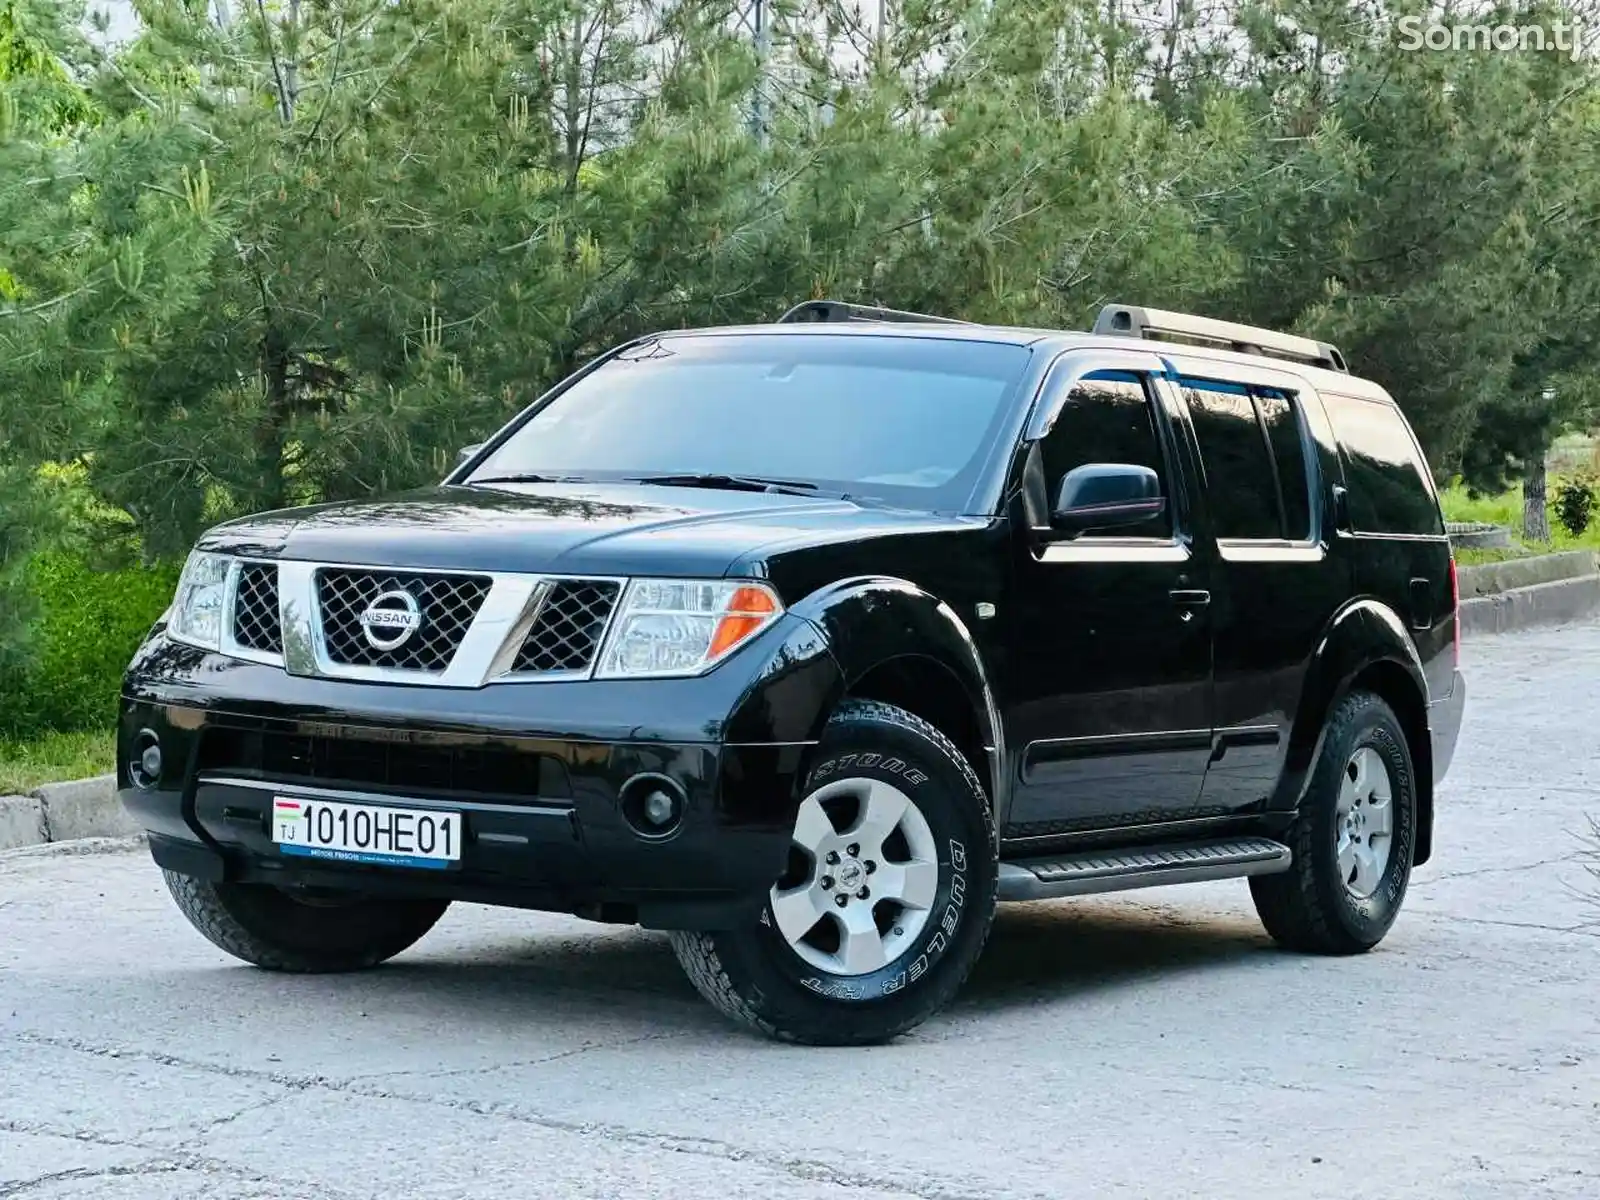 Nissan Pathfinder, 2006-2